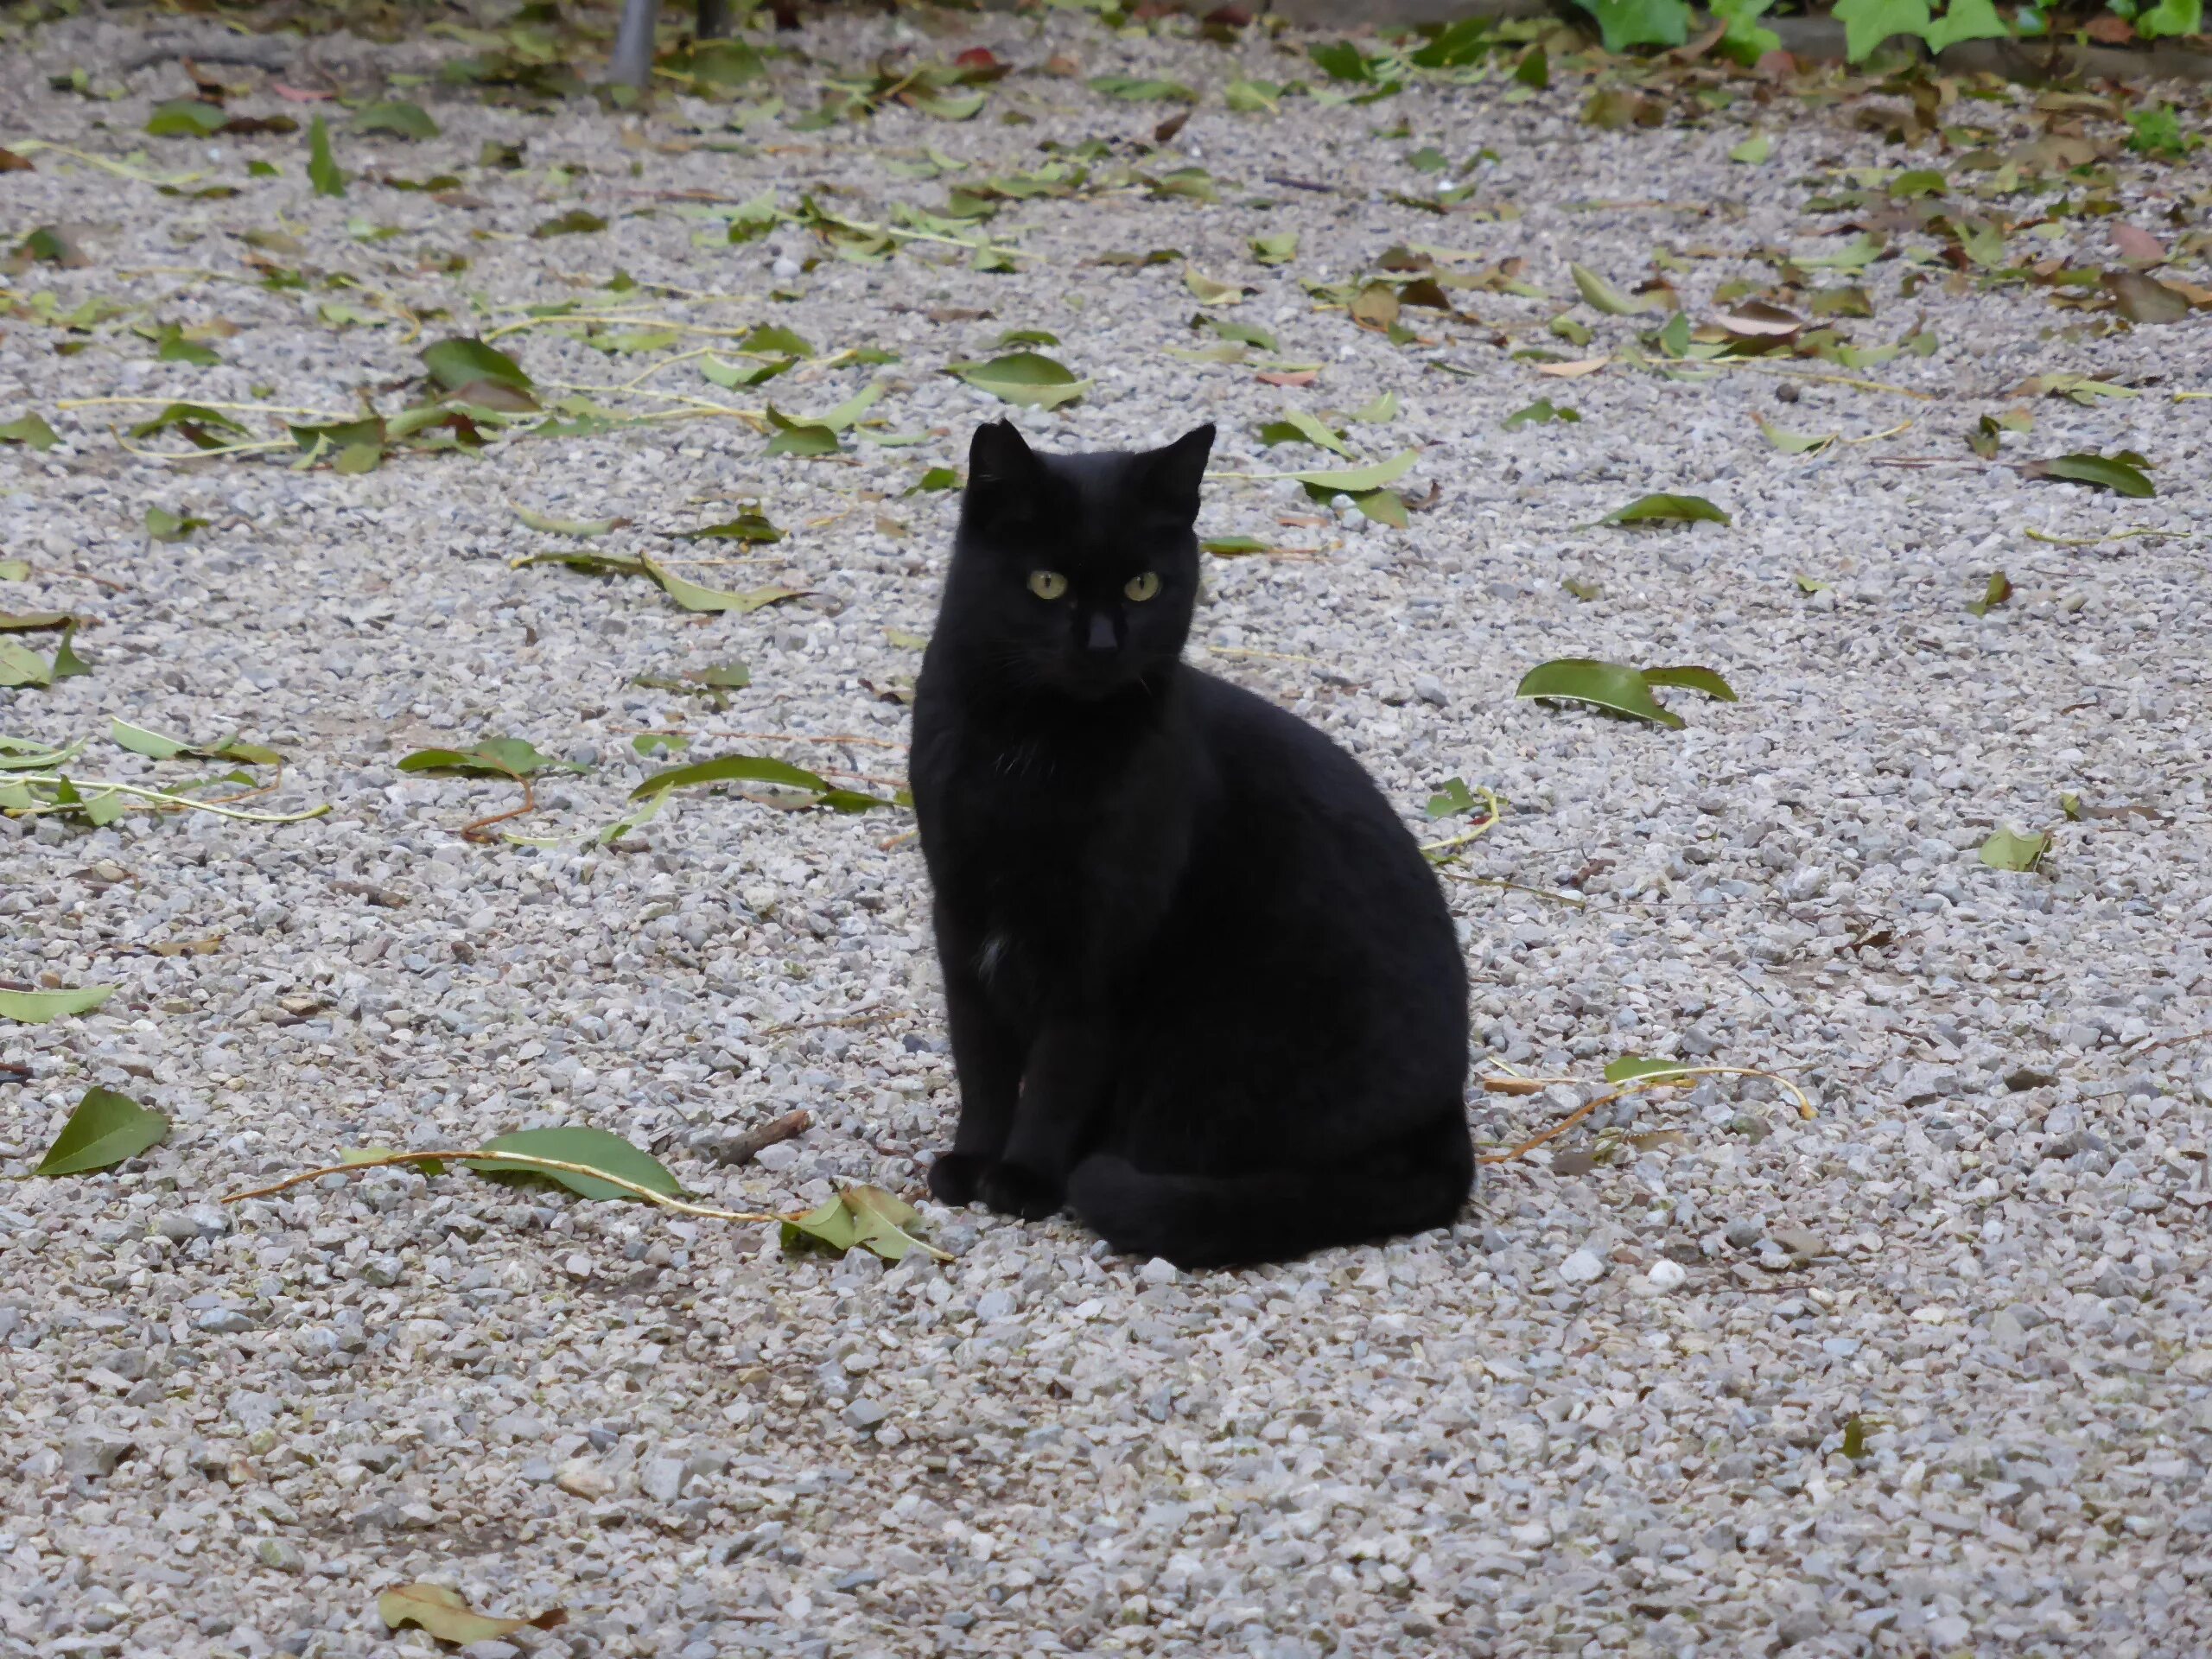 Кошка 1. Черный кот 1 год. 1 Кошка. Черная кошка 1 год. Черный кот в Барселоне.